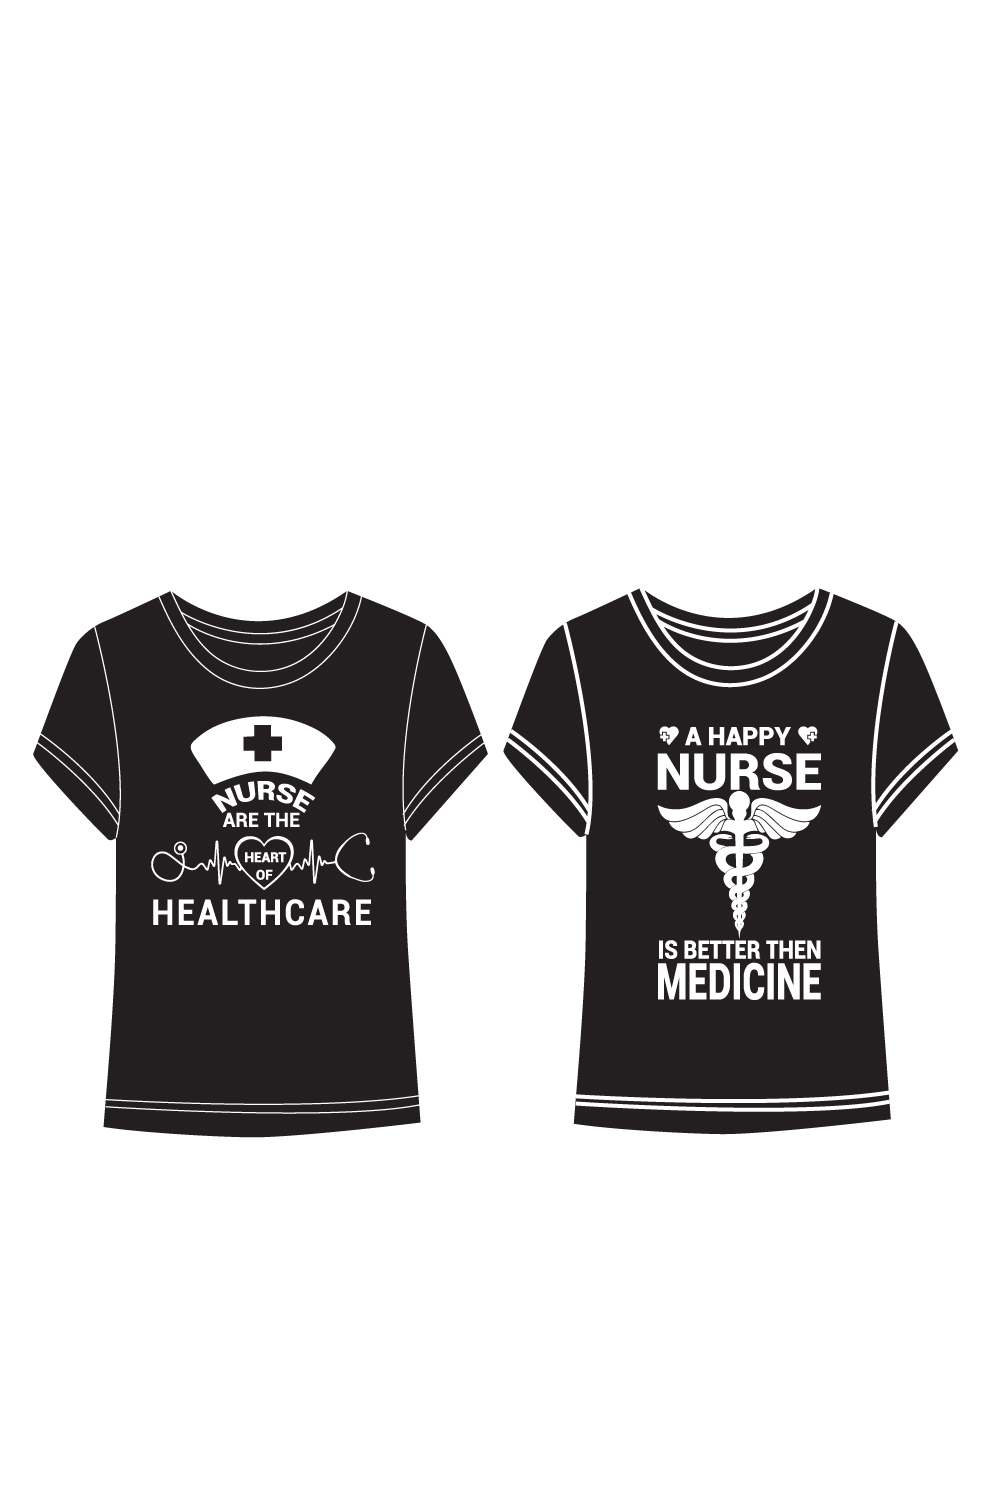 Nurse T-shirt Design pinterest preview image.